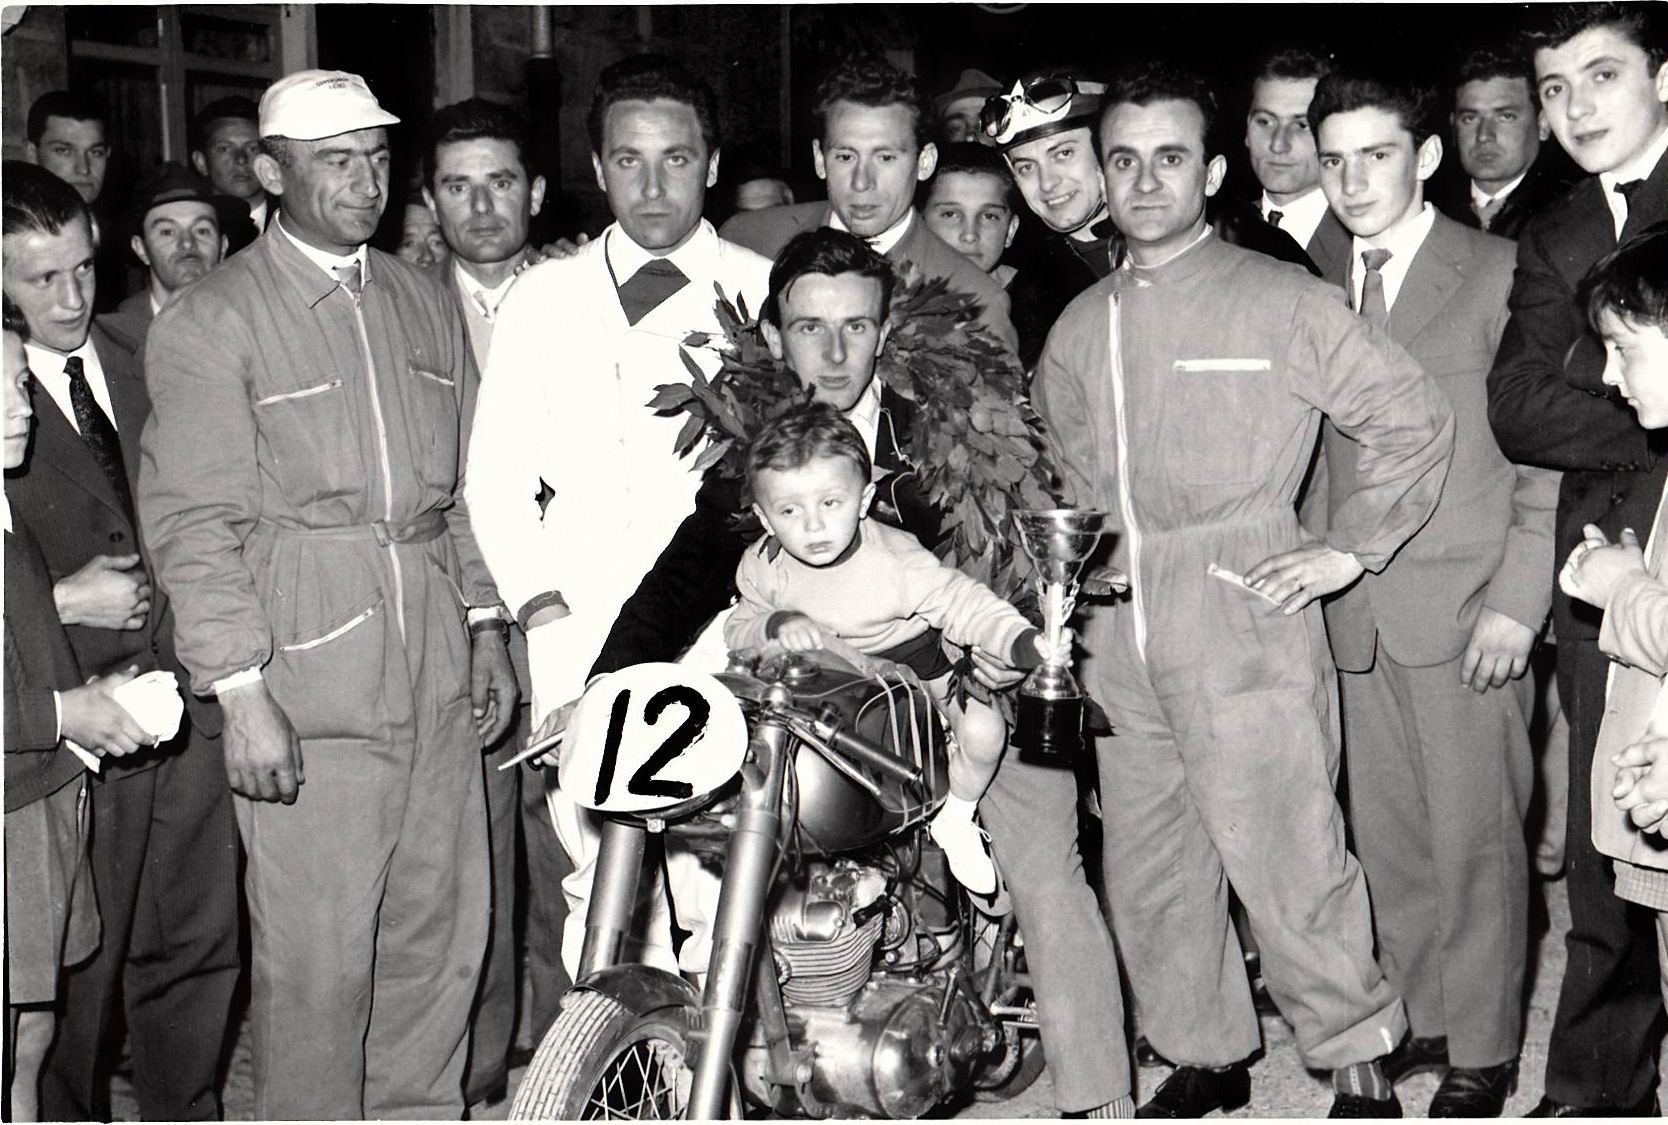 1958-Francesco-Croci-festeggia-vittoria-Ducati-125-cc-in-tuta-Giorgio-Sgarbi